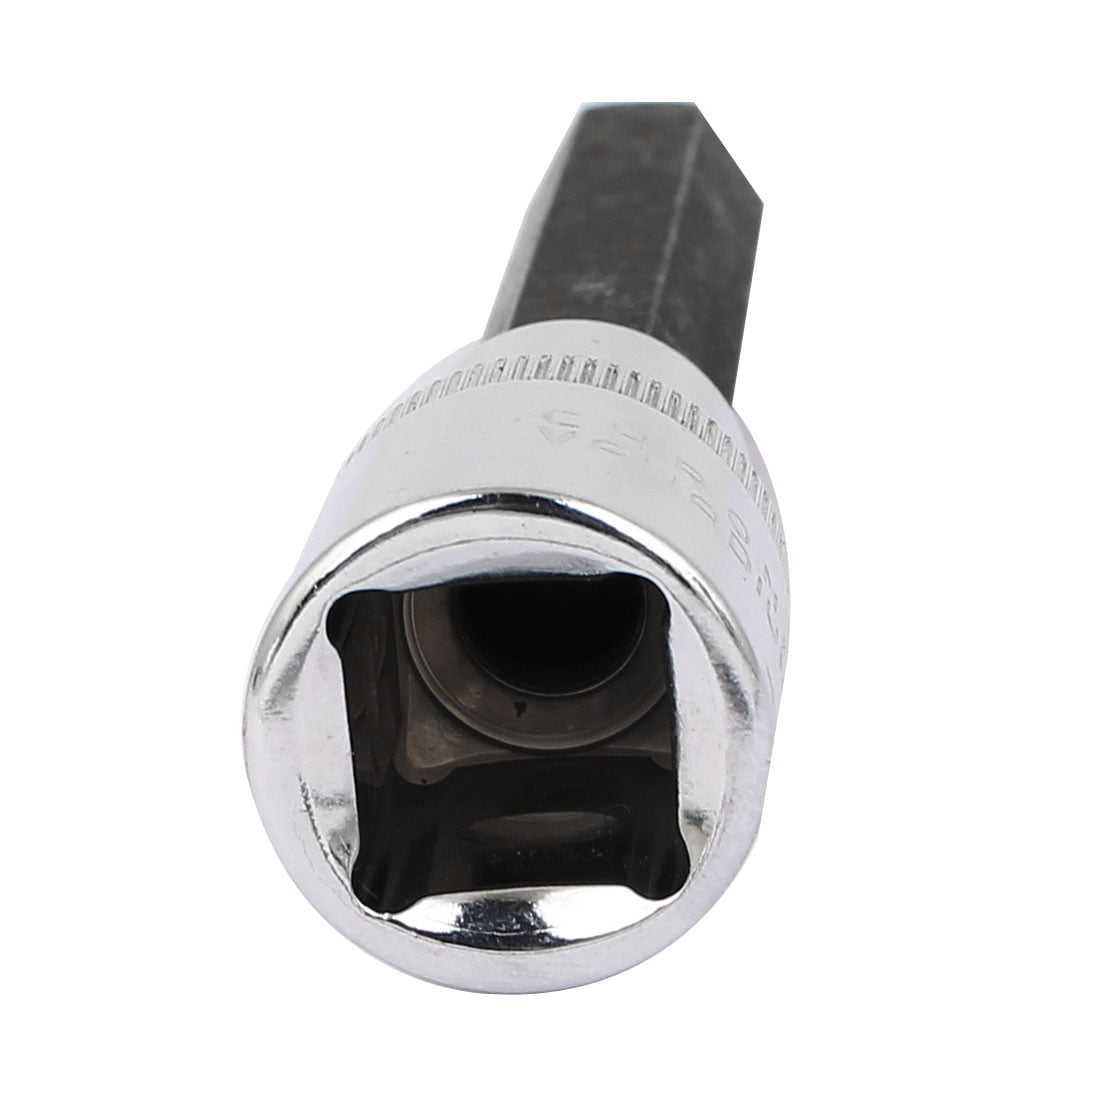 S2 Steel 12 mm Allen Key Internal Hex Pro 4041-12 Impact Socket Werkzeug 